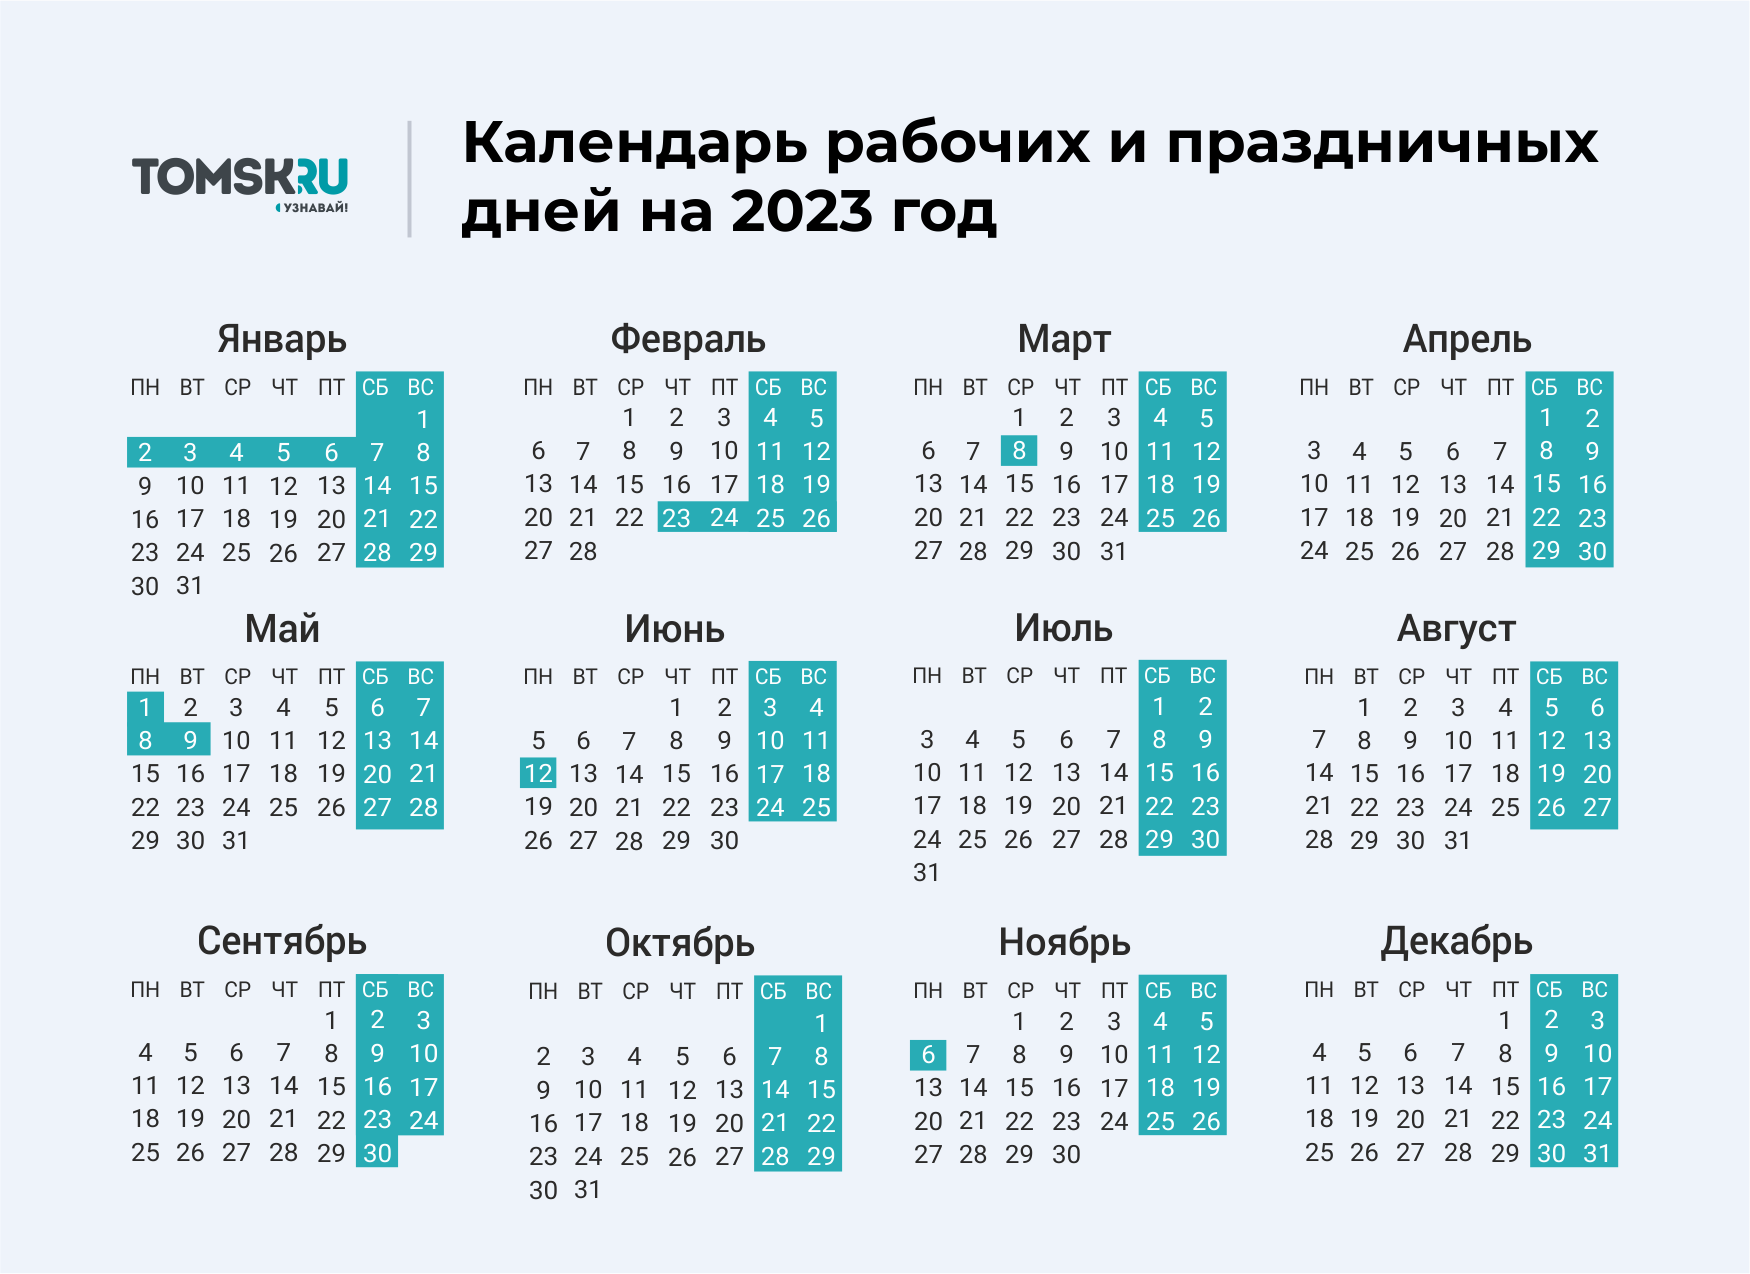 Какие дни отдыхаем на 9. Выходные дни в 2023 году в России календарь. Календарь выходных и праздничных дней на 2023 год в России. Календарь праздничных выходеыхв 2023 году. Календарь на 2023 год с праздниками и выходными выходные снизу.